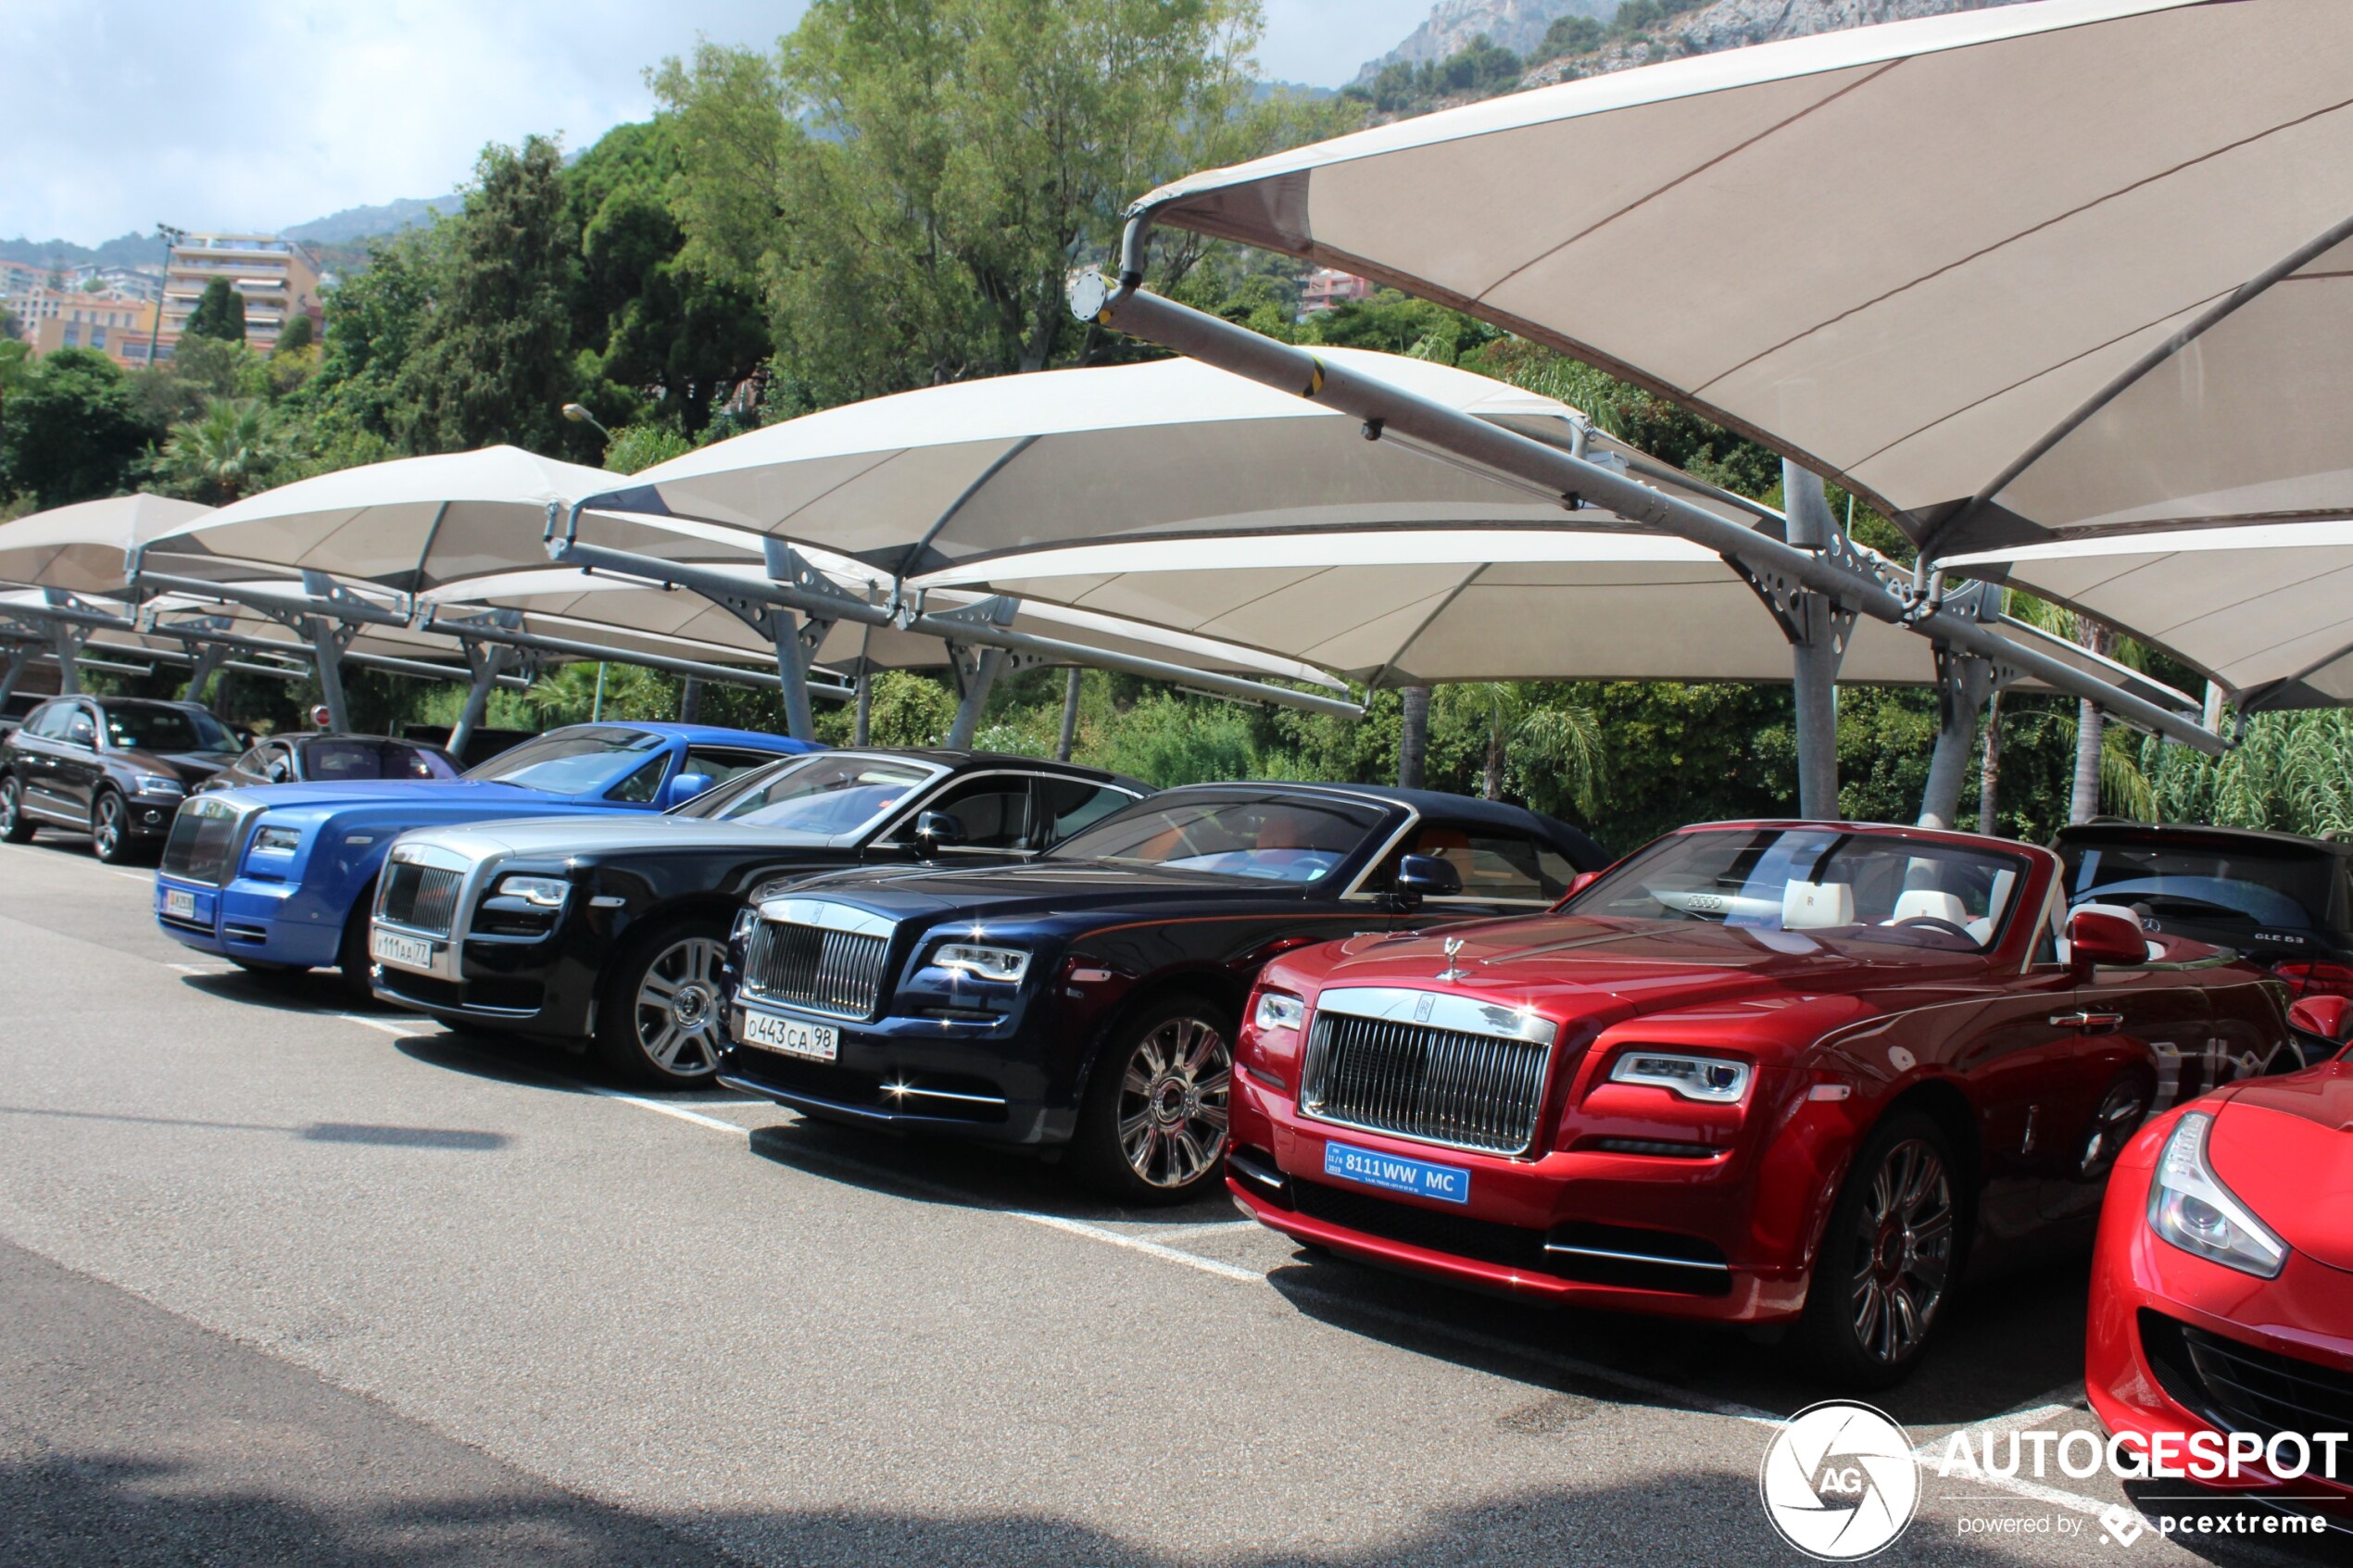 Met welke Rolls-Royce zou jij naar huis gaan?